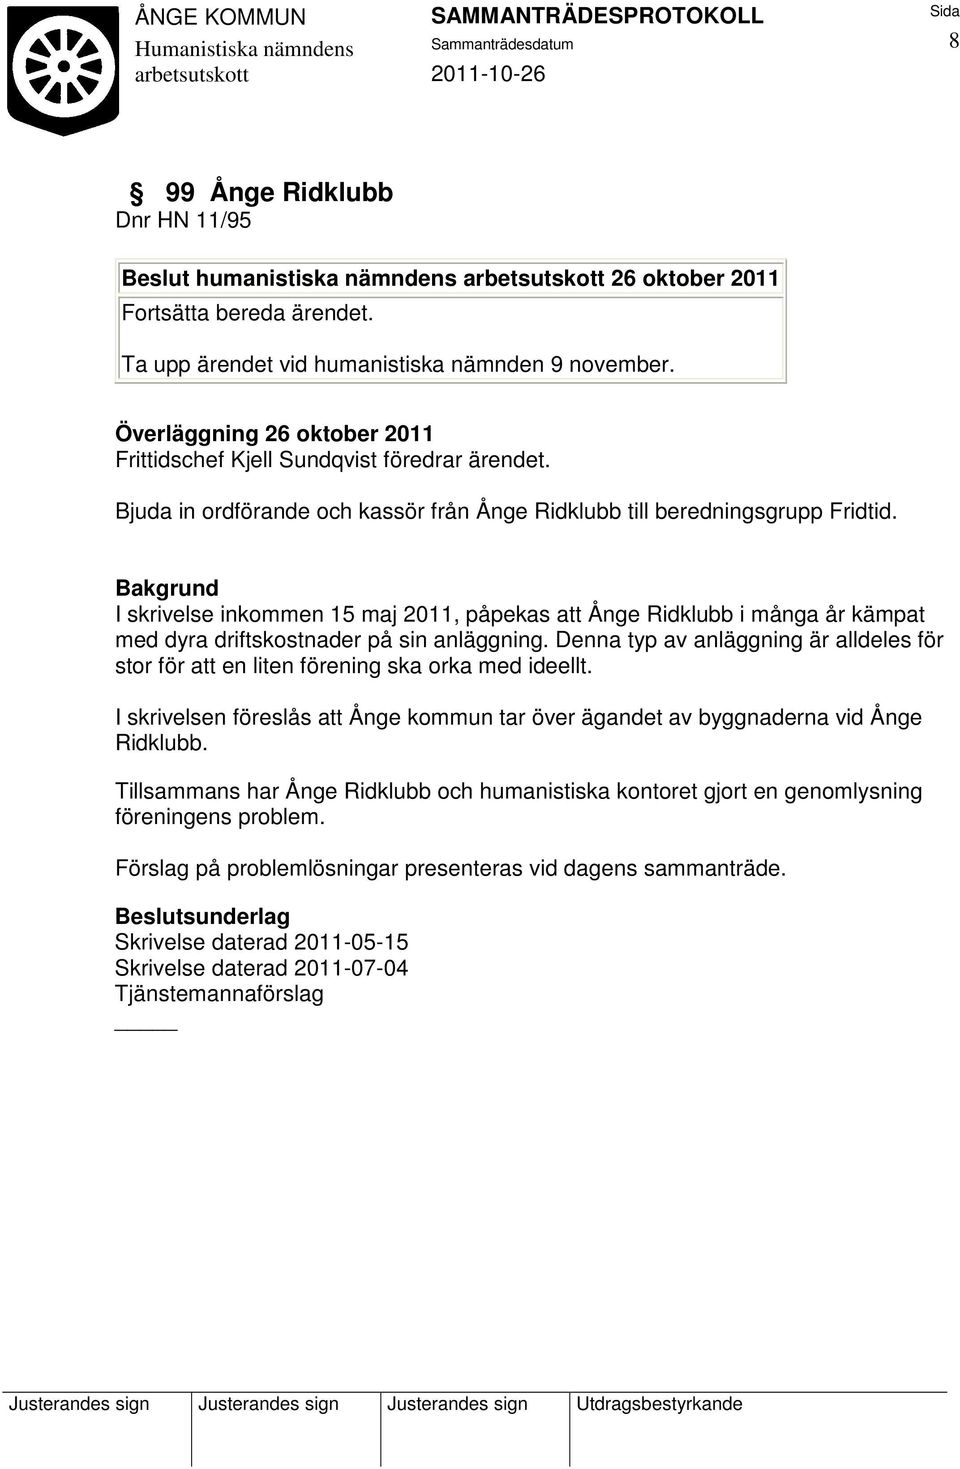 I skrivelse inkommen 15 maj 2011, påpekas att Ånge Ridklubb i många år kämpat med dyra driftskostnader på sin anläggning.